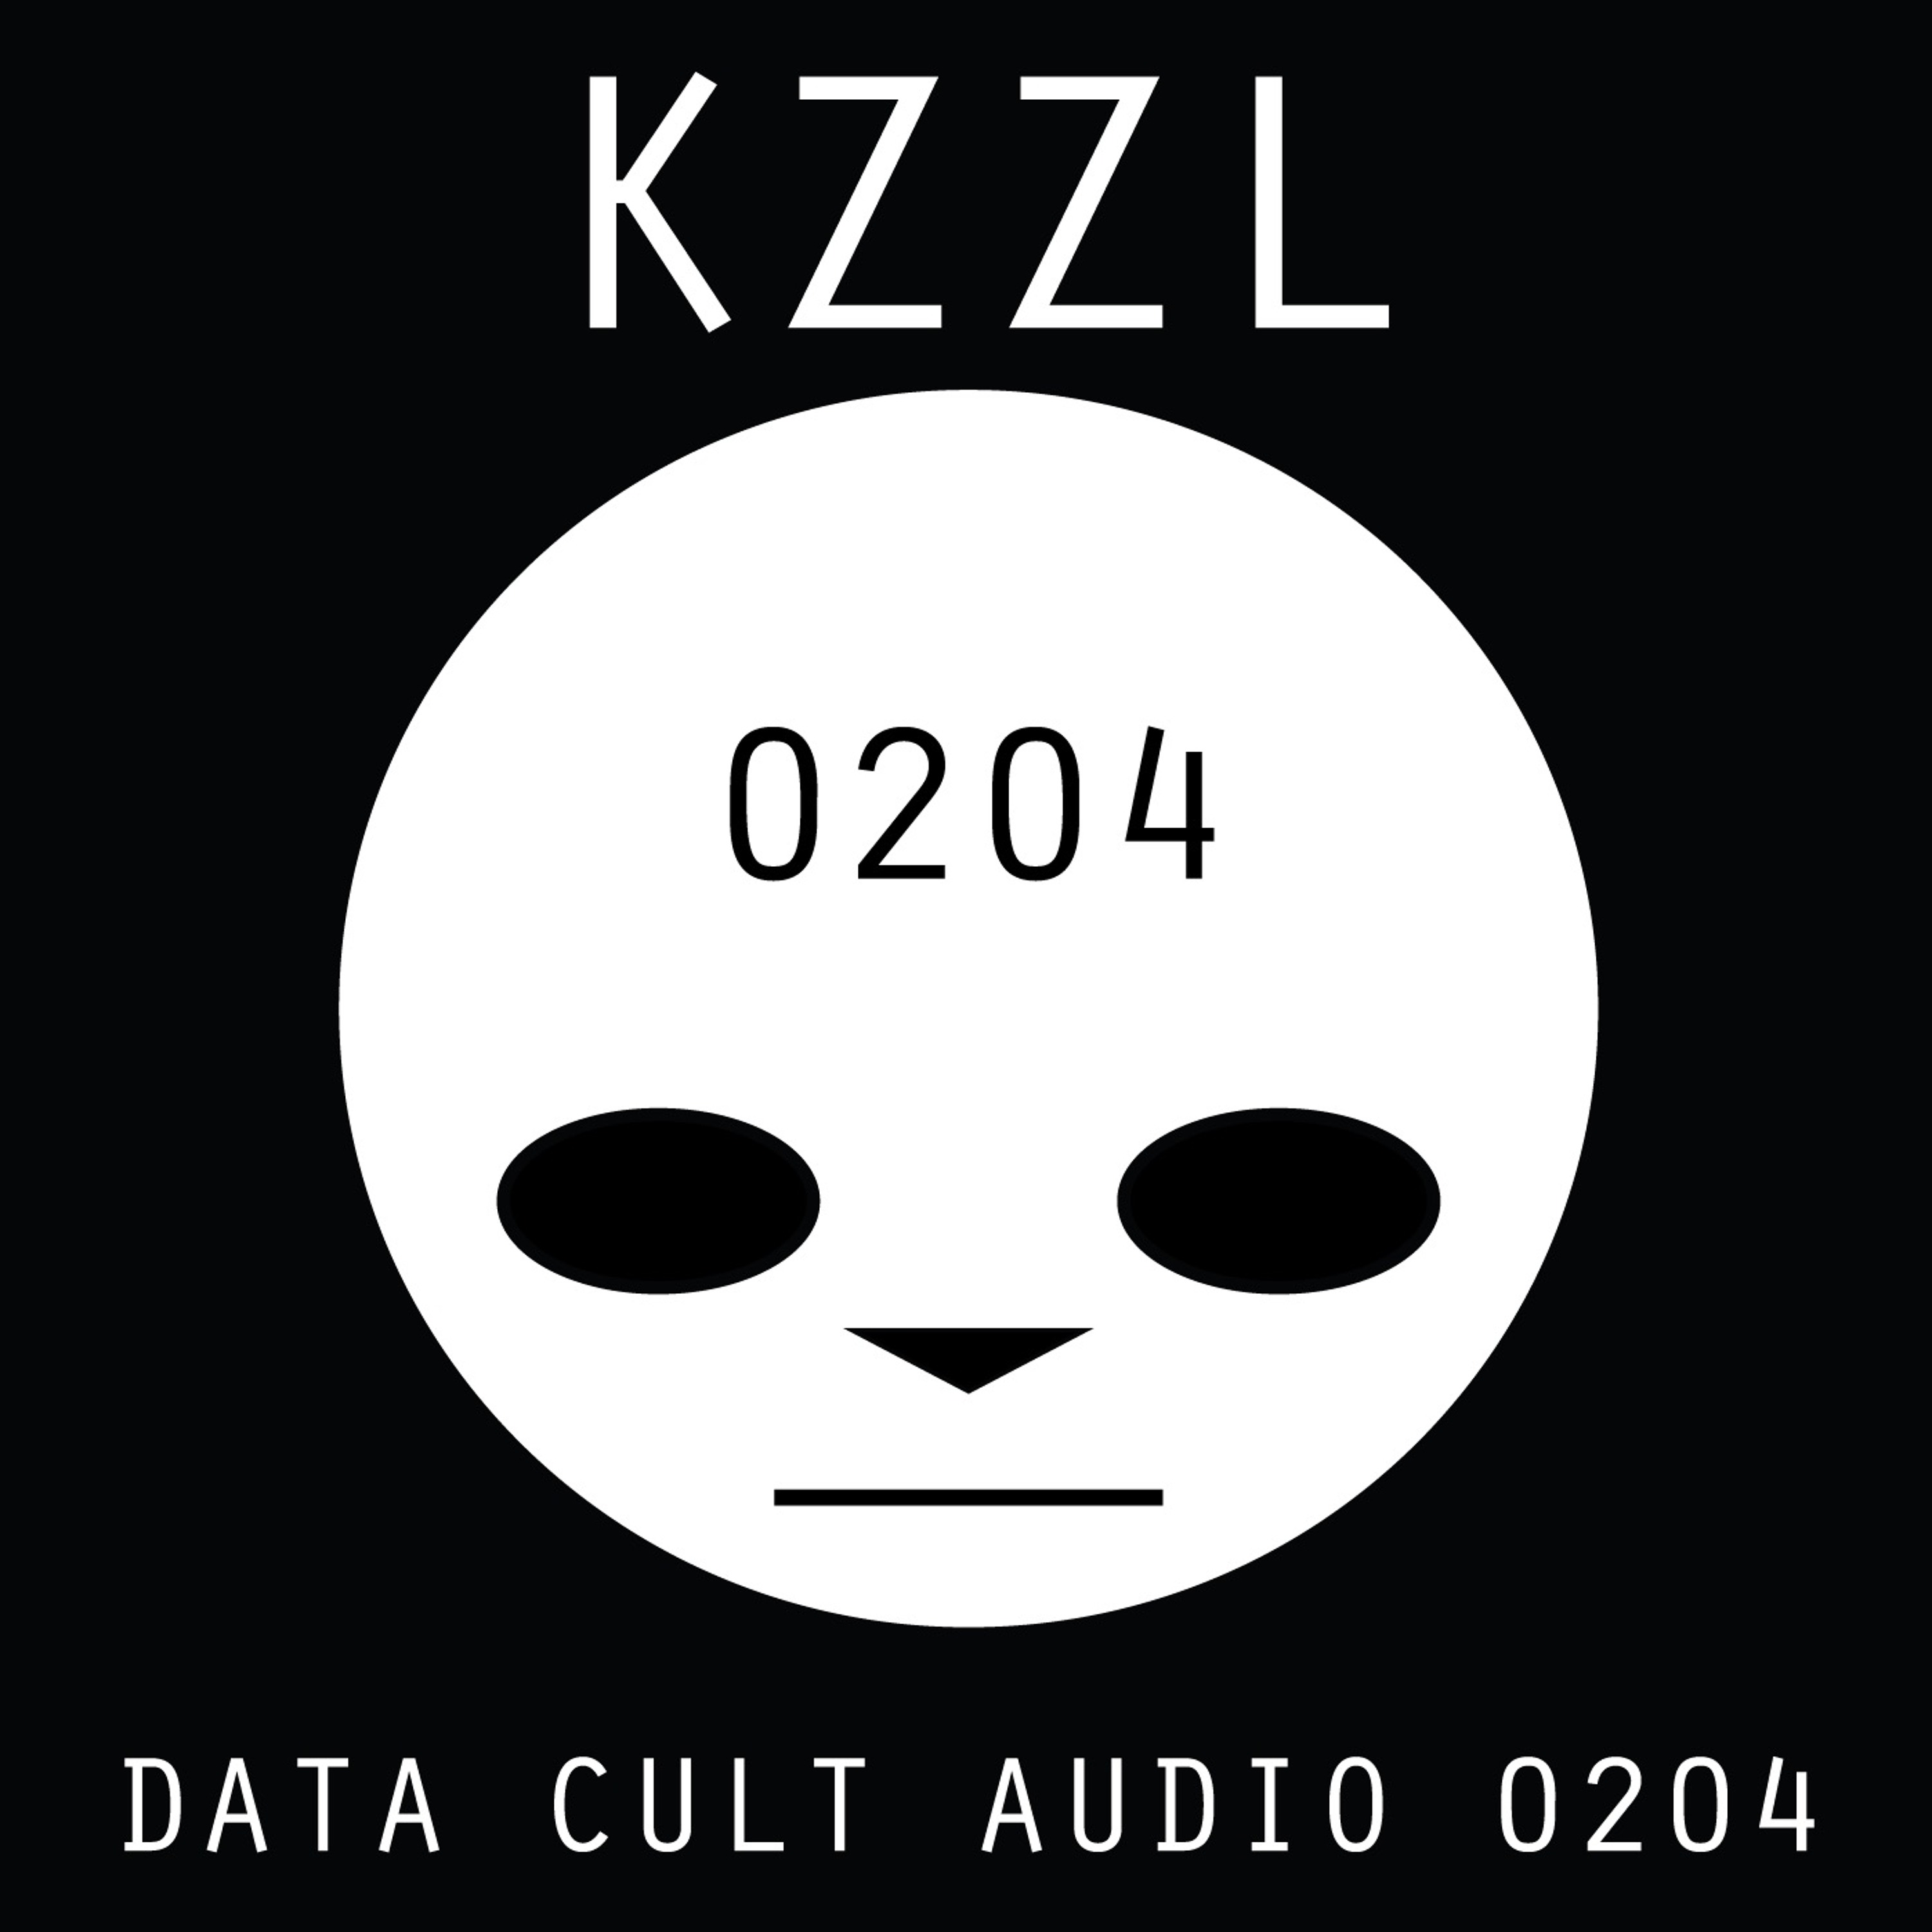 Data Cult Audio 0204 - KZZL